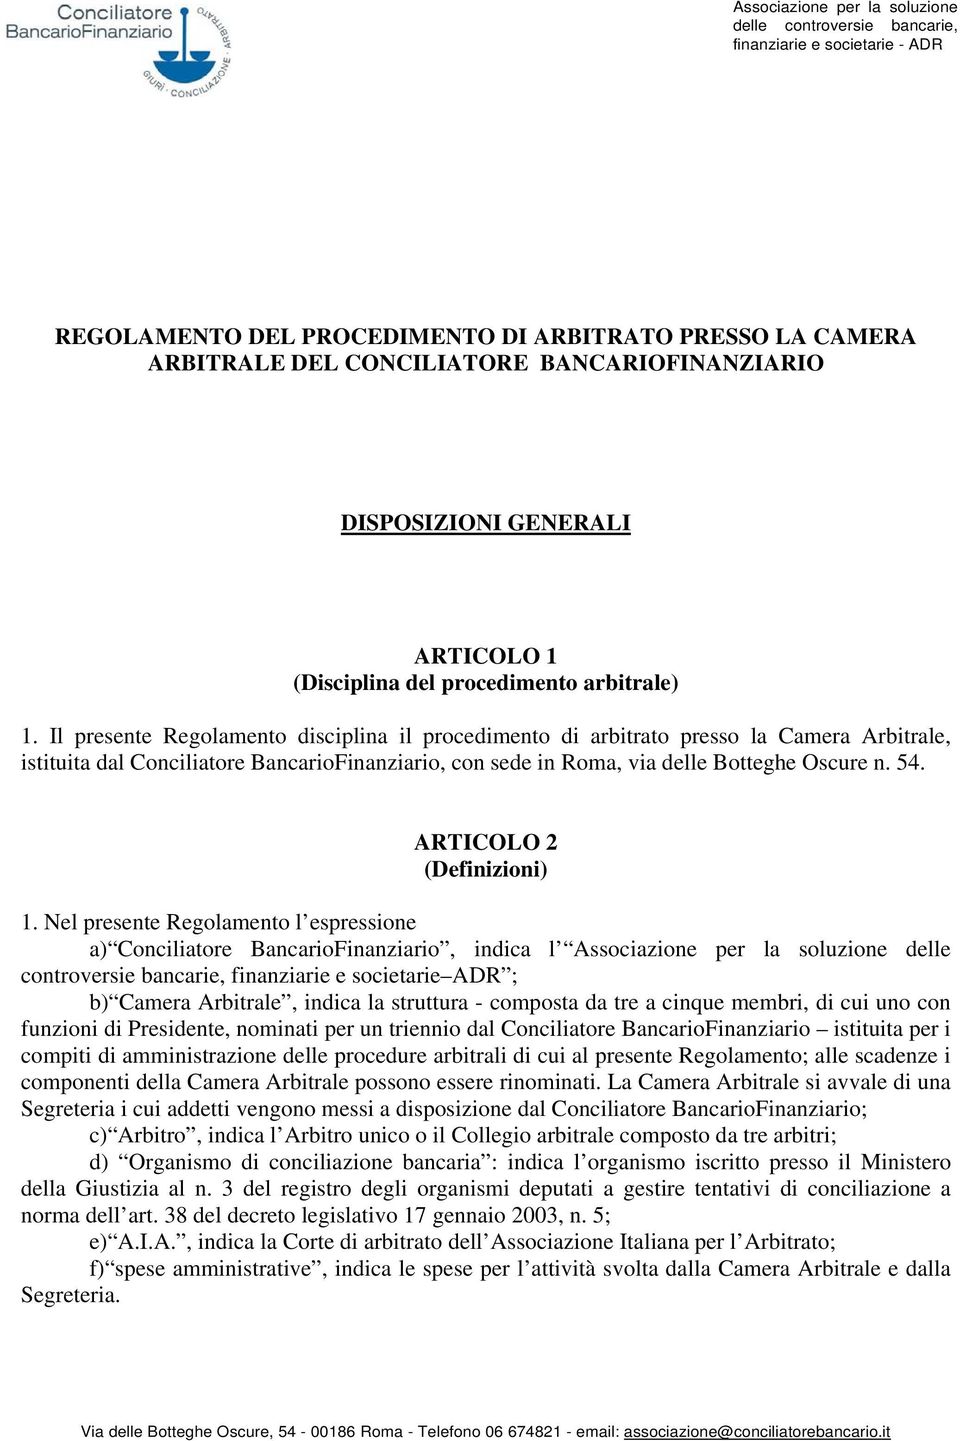 Il presente Regolamento disciplina il procedimento di arbitrato presso la Camera Arbitrale, istituita dal Conciliatore BancarioFinanziario, con sede in Roma, via delle Botteghe Oscure n. 54.